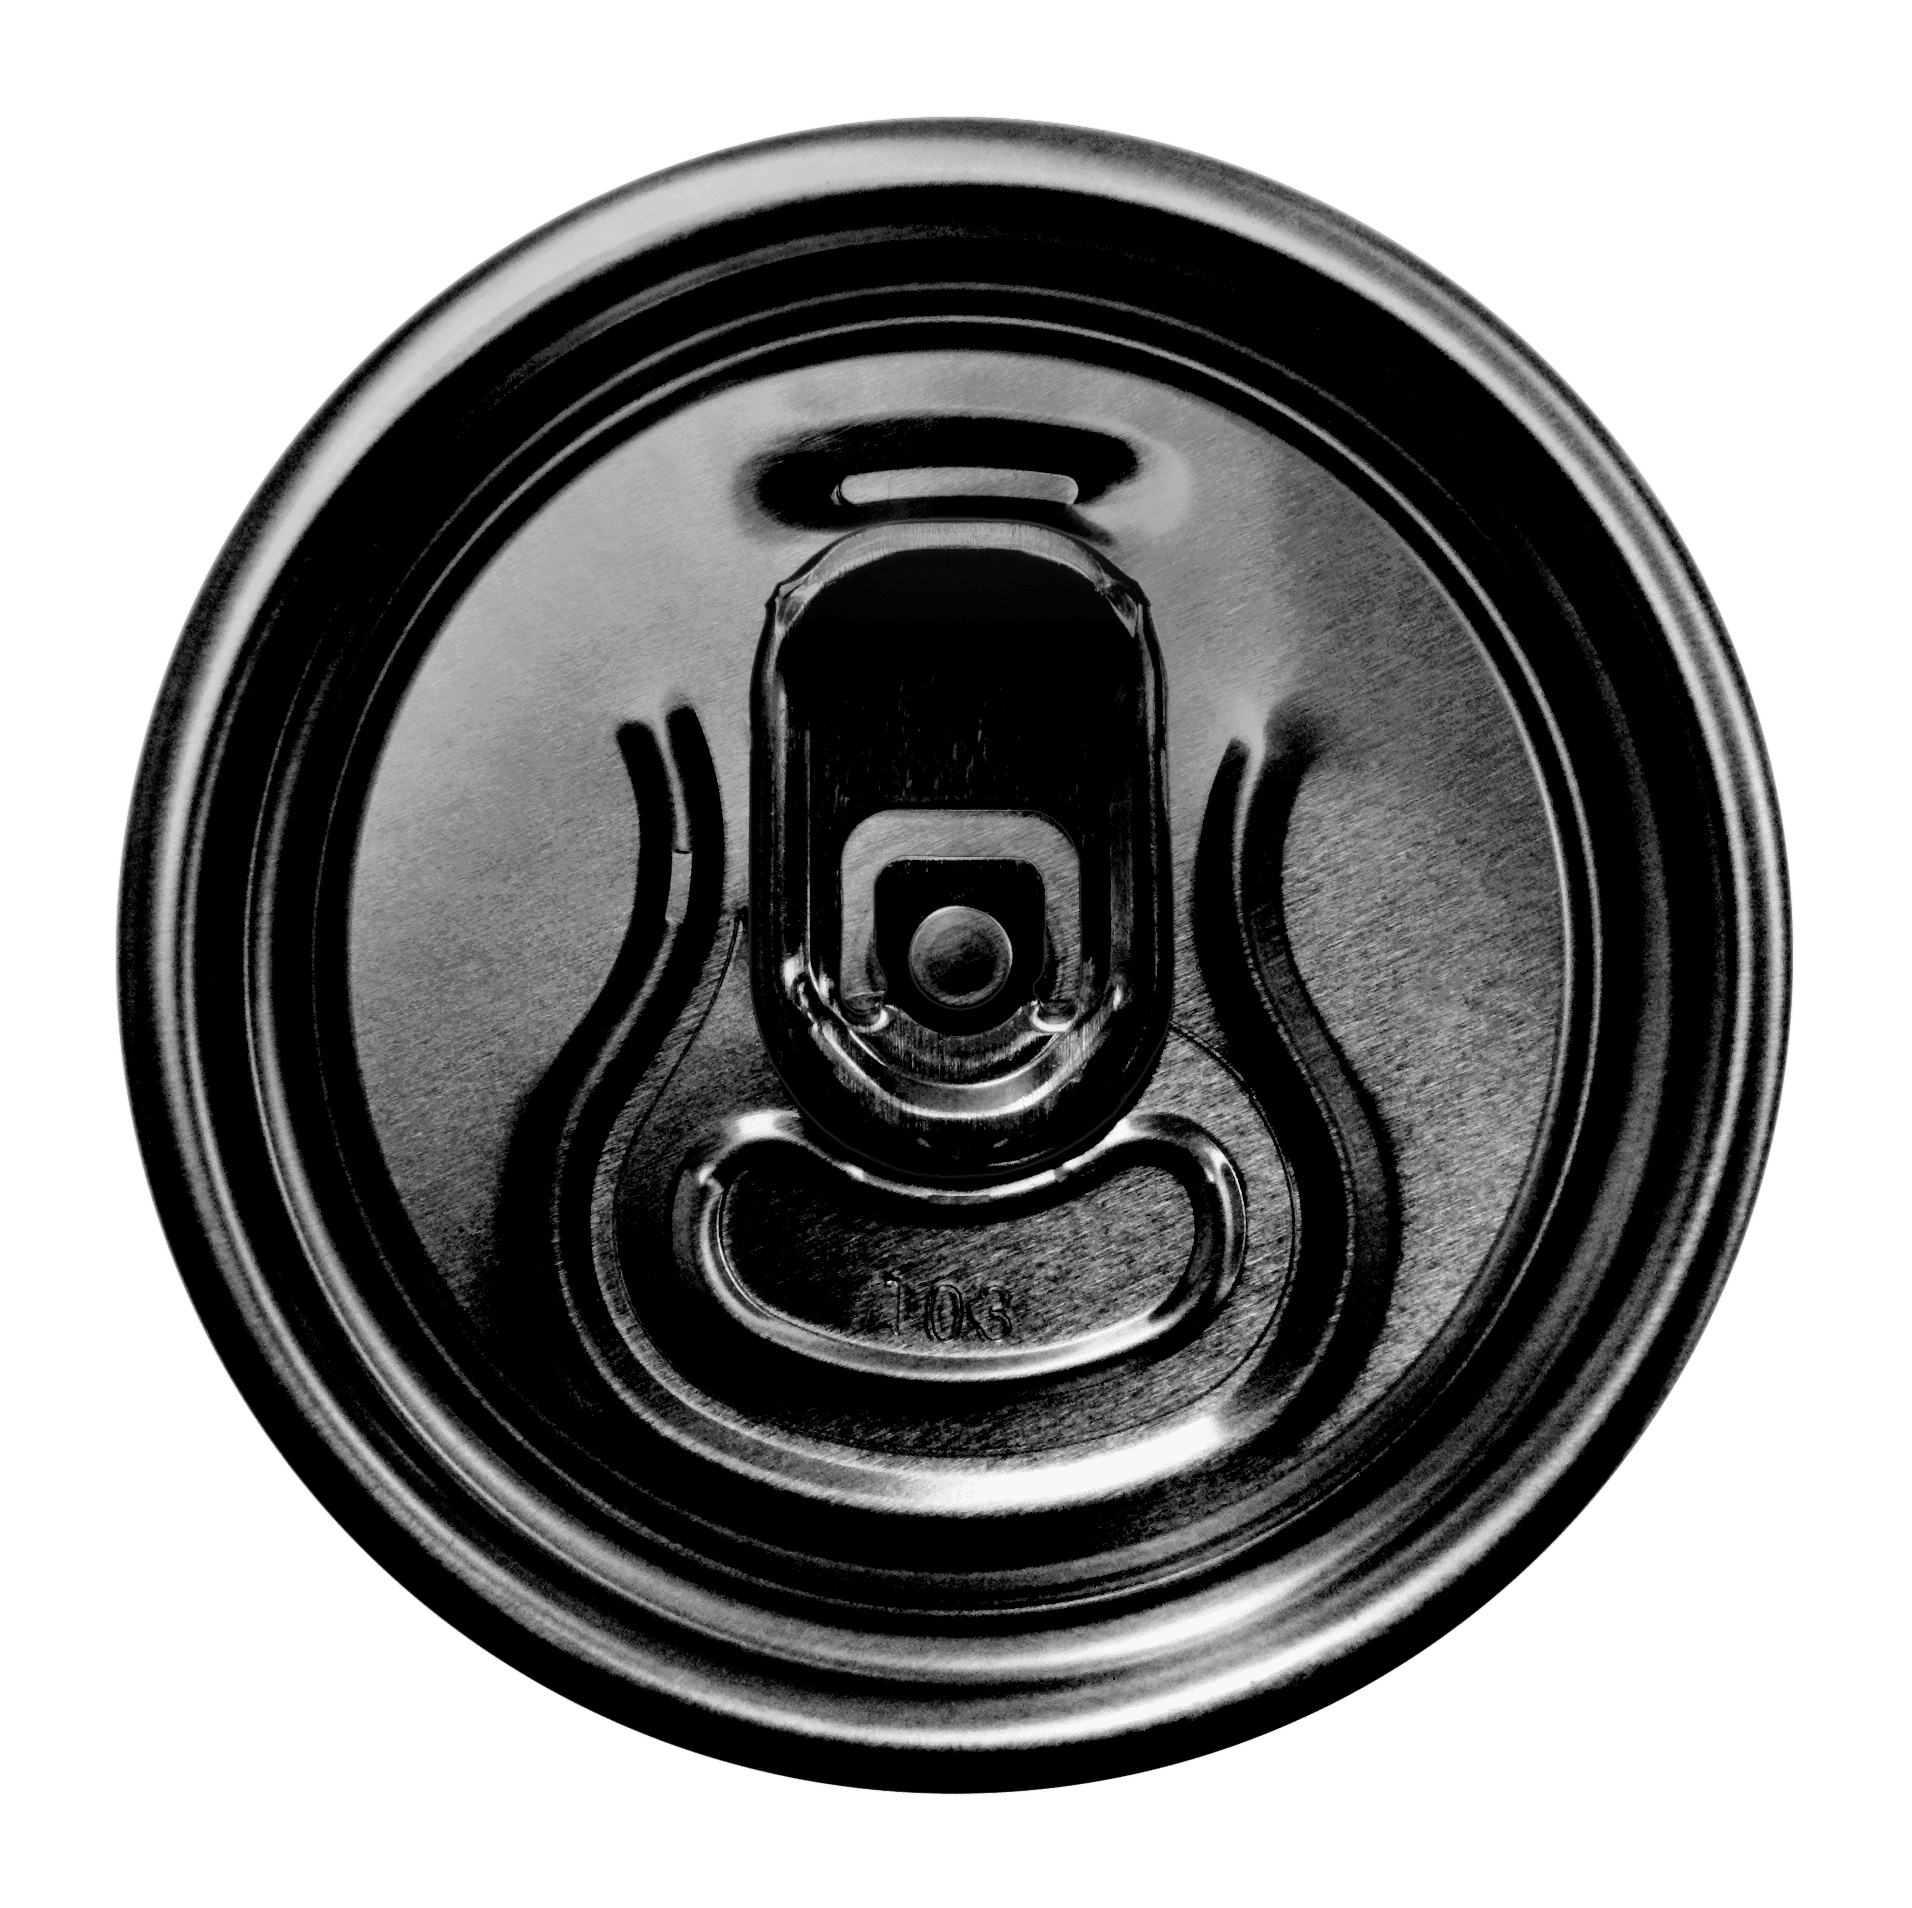 Wieczko puszki na piwo czarne matowe + kluczyk czarny (Zdjęcie 1)